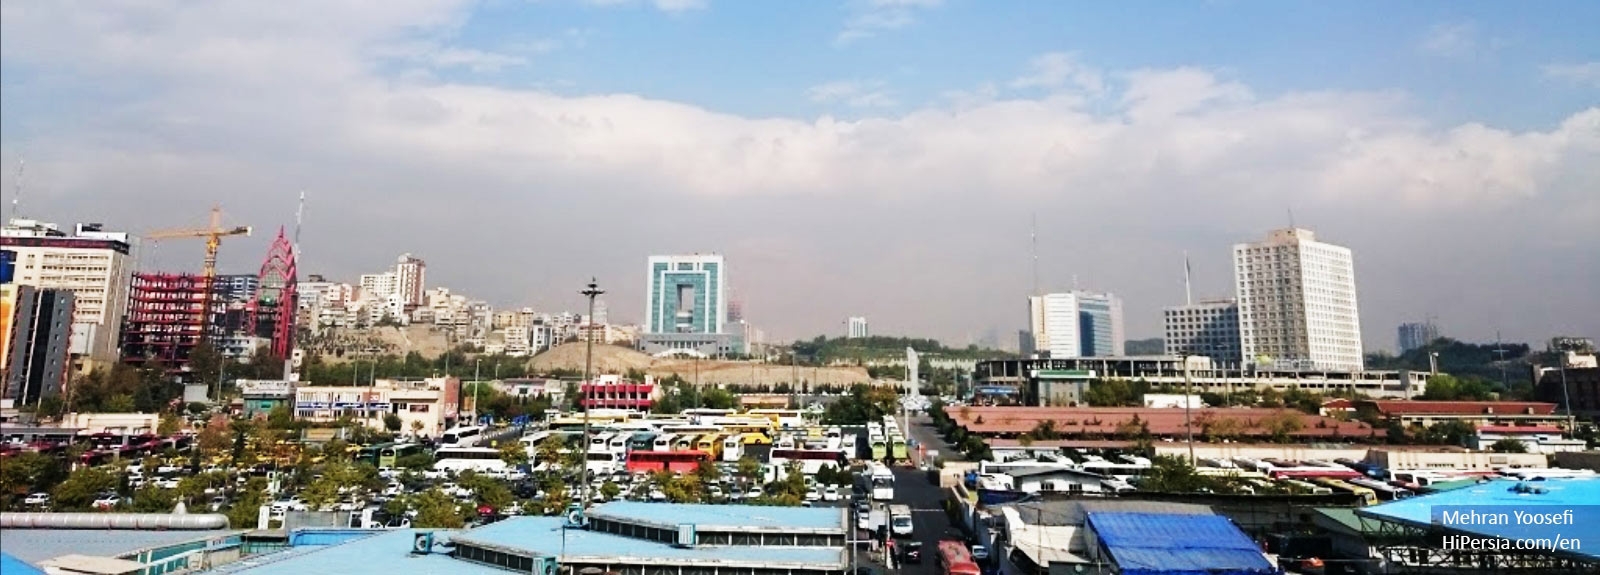 Tehran's Bus Terminals